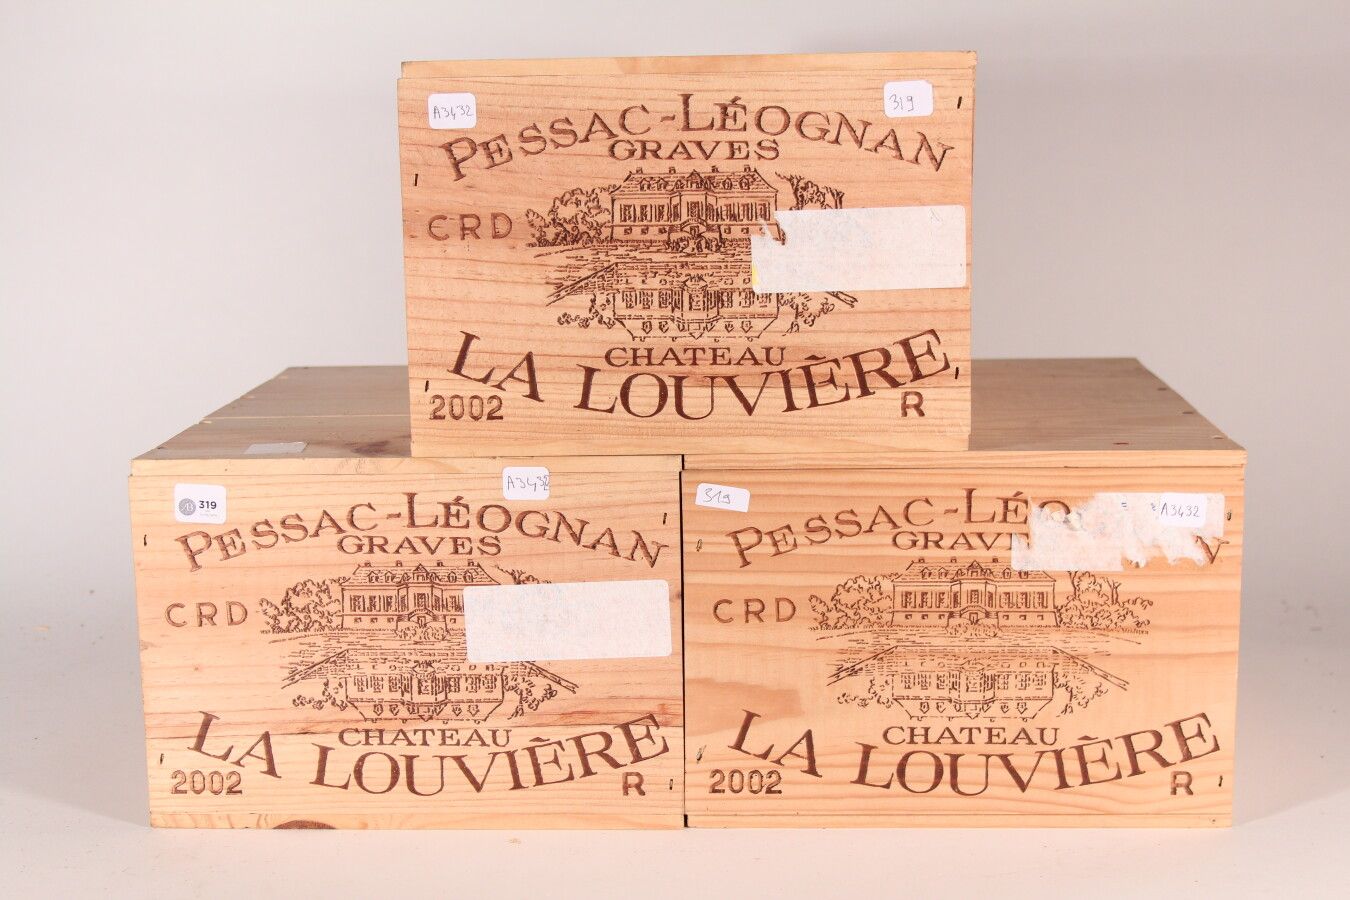 Null 2002 - Château La Louvière

Pessac-Léognan - 18 blles